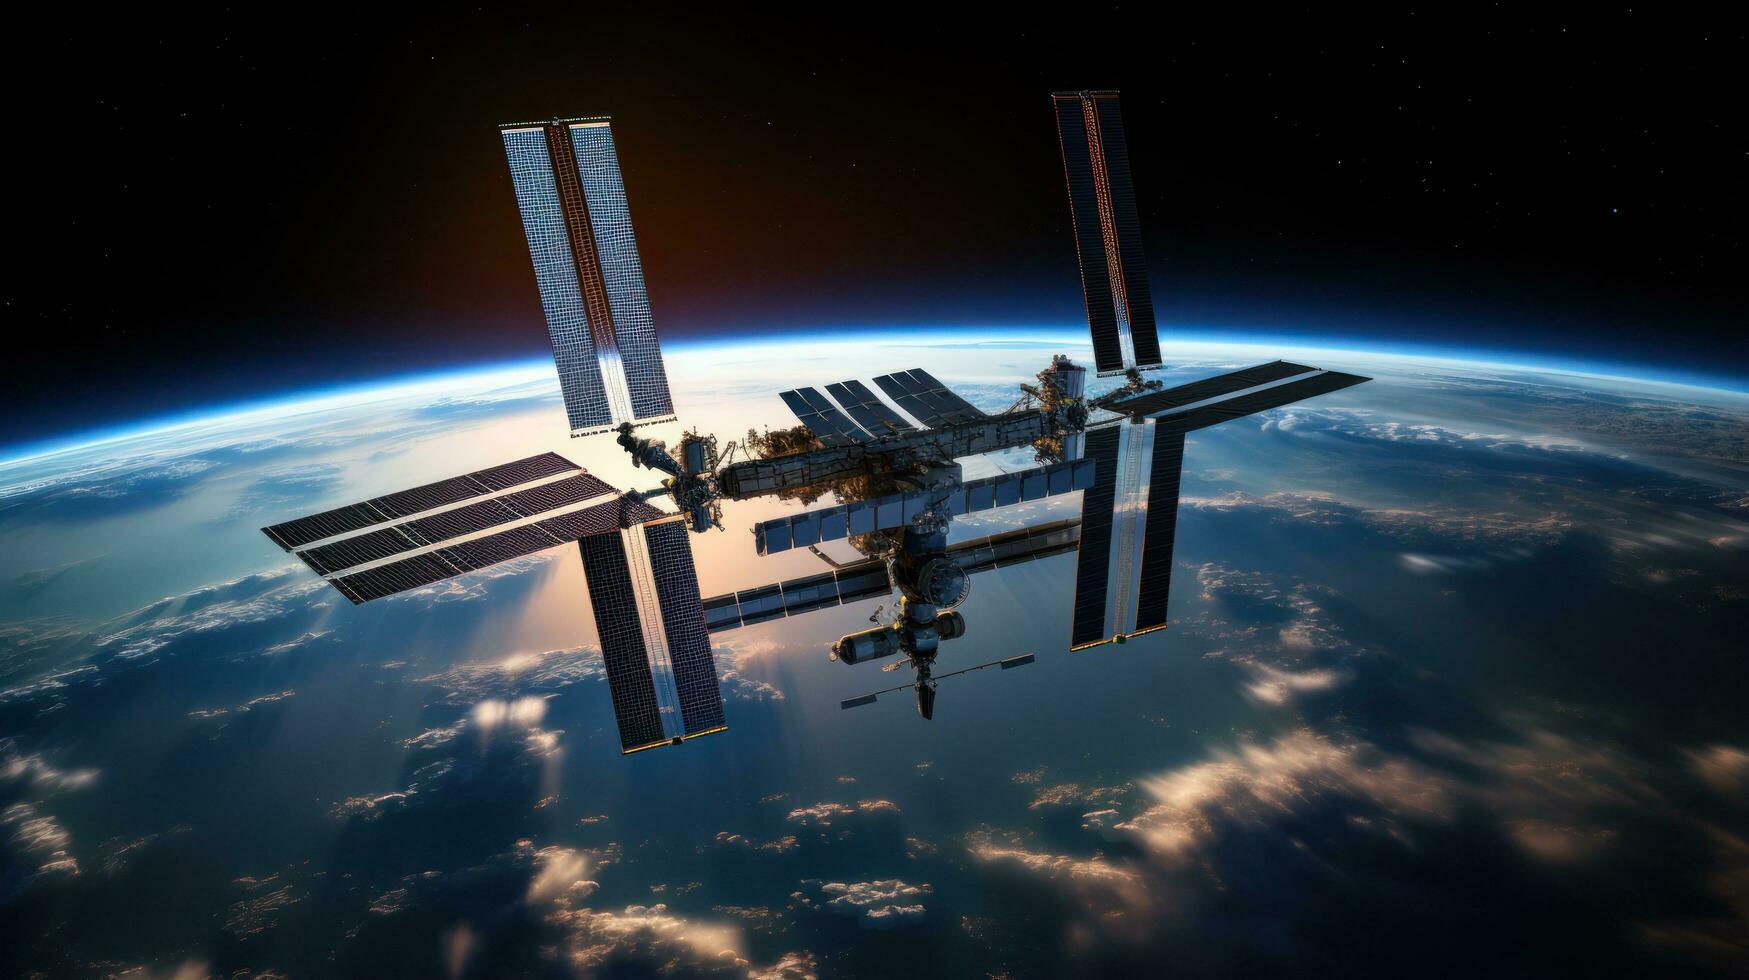 Internationale ruimte station in een baan om de aarde bovenstaand aarde foto